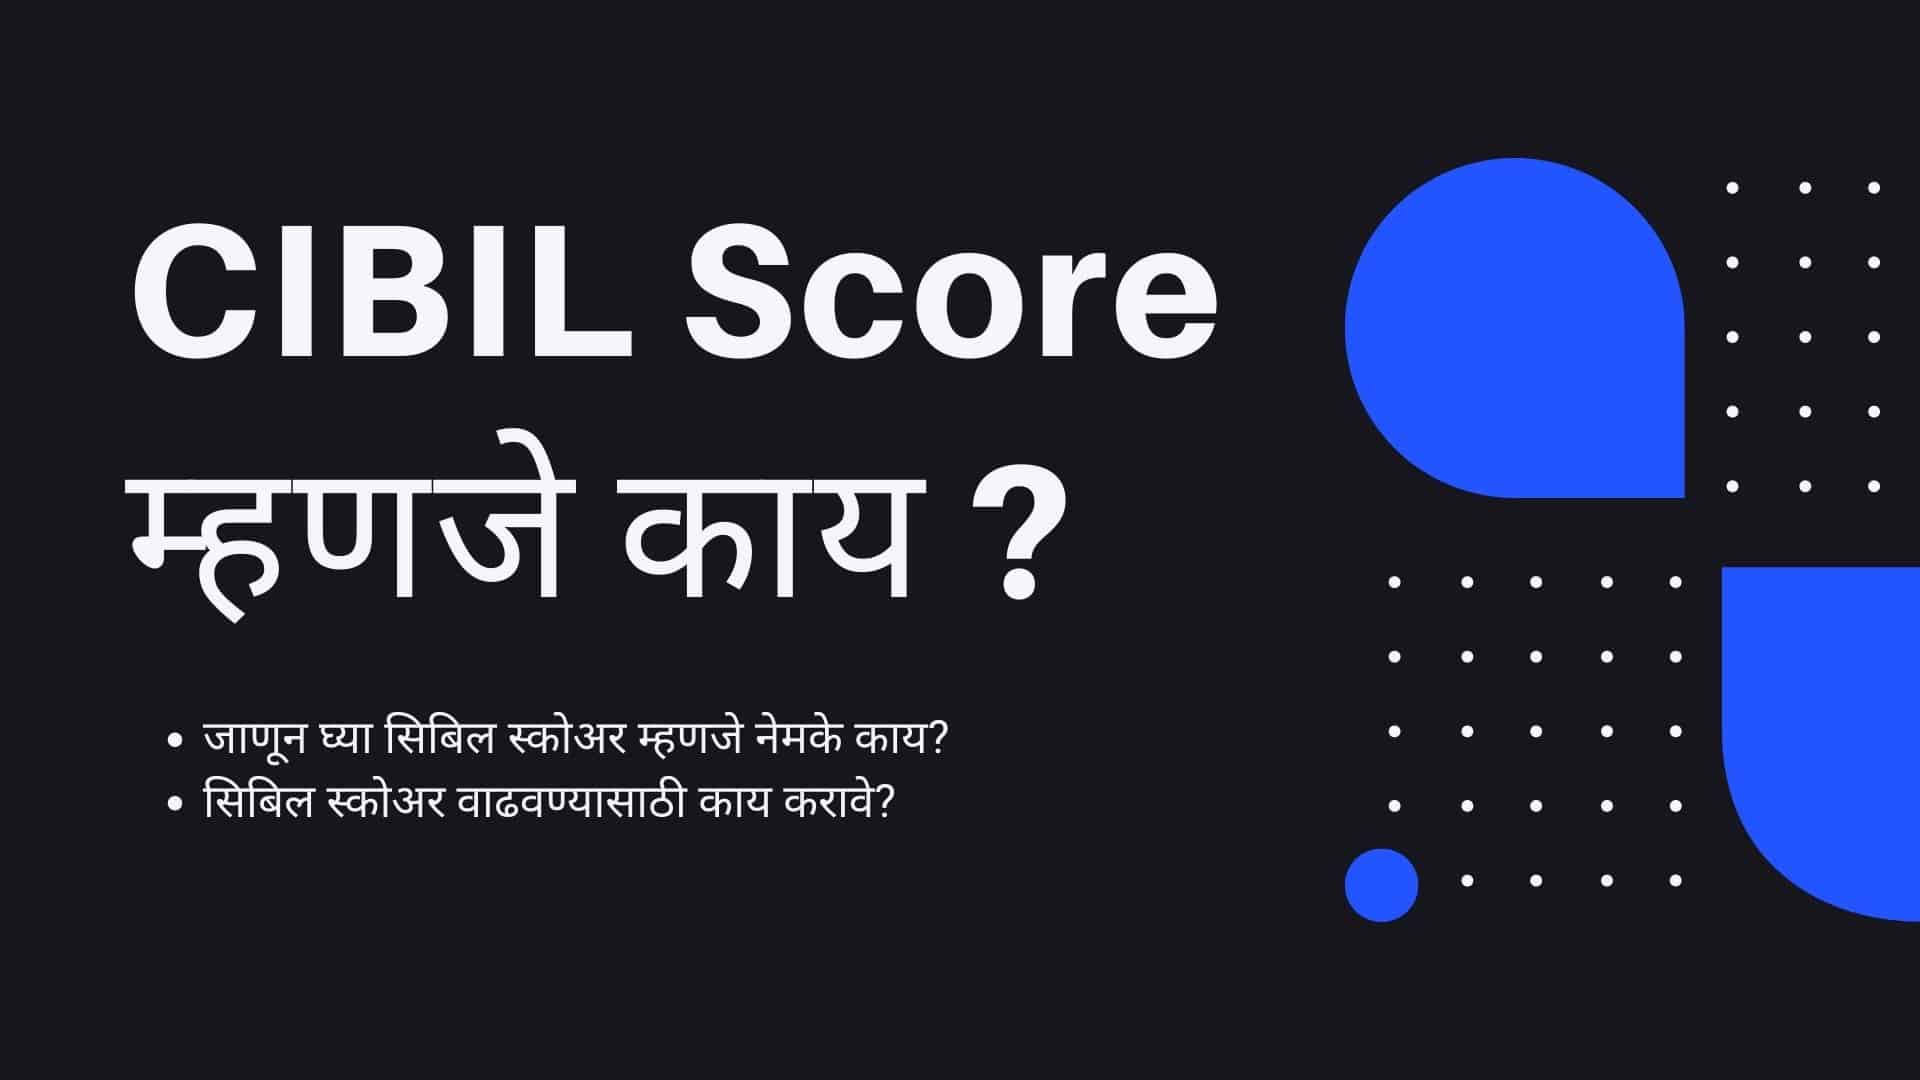 Cibil score information in Marathi